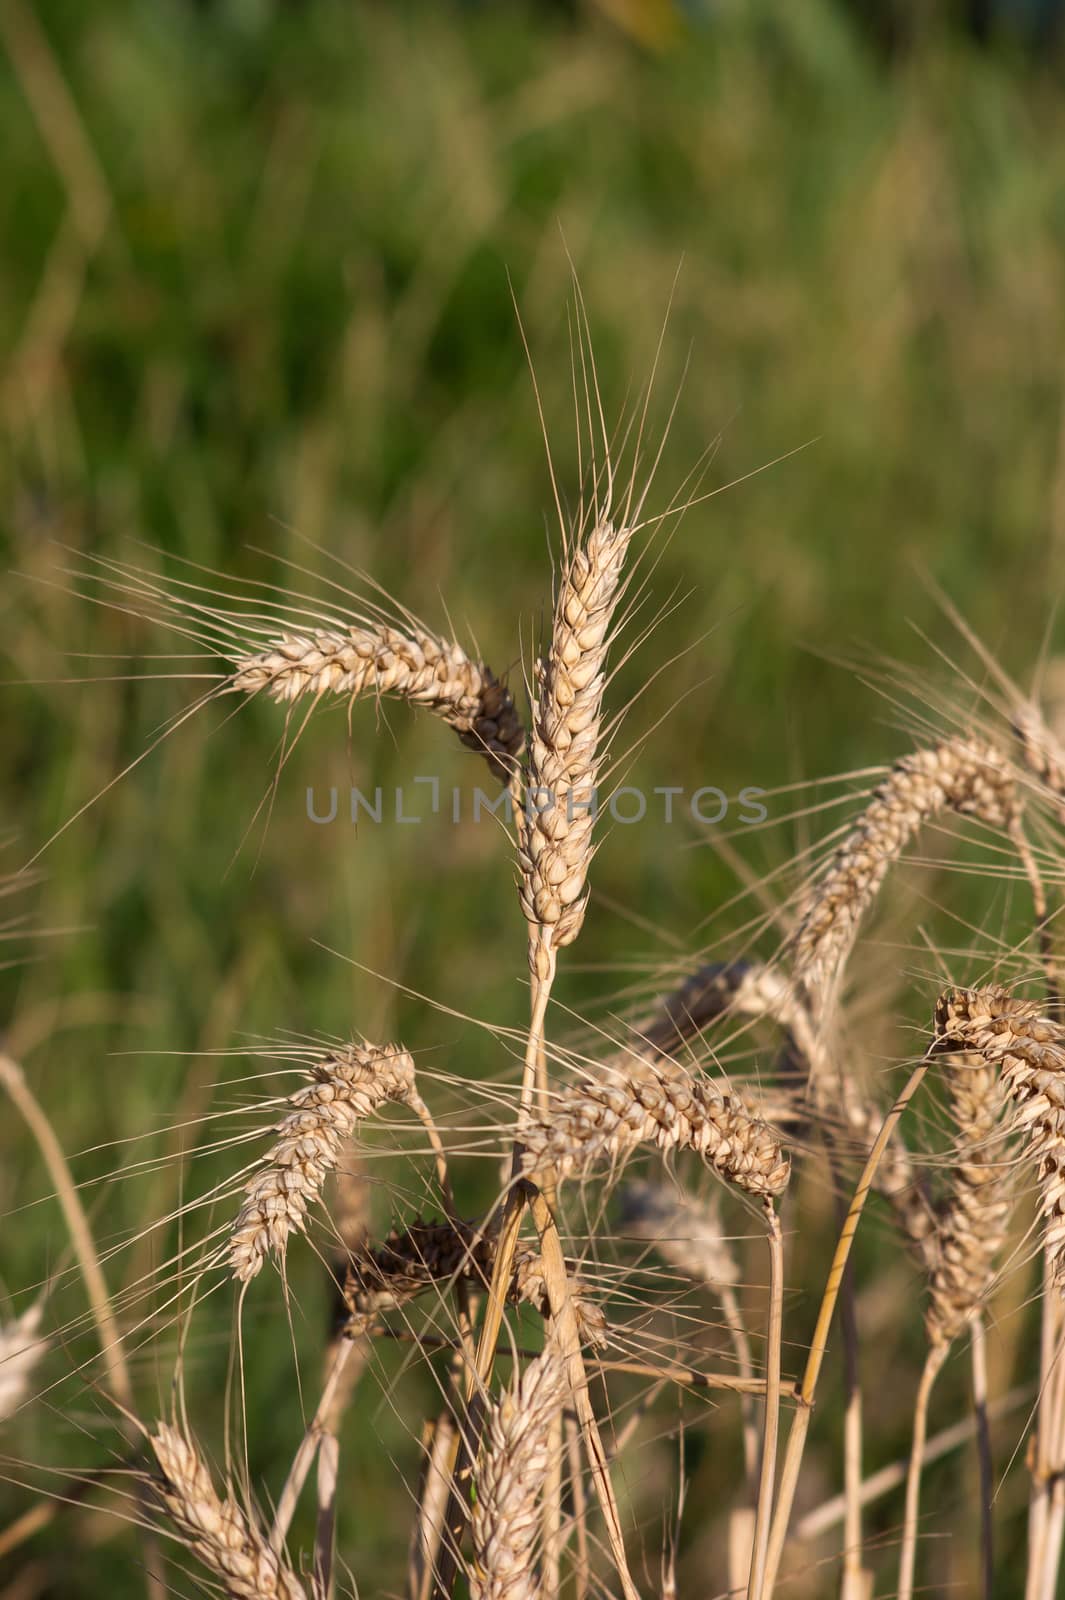 Wheat (Triticum aestivum L.) by dadalia